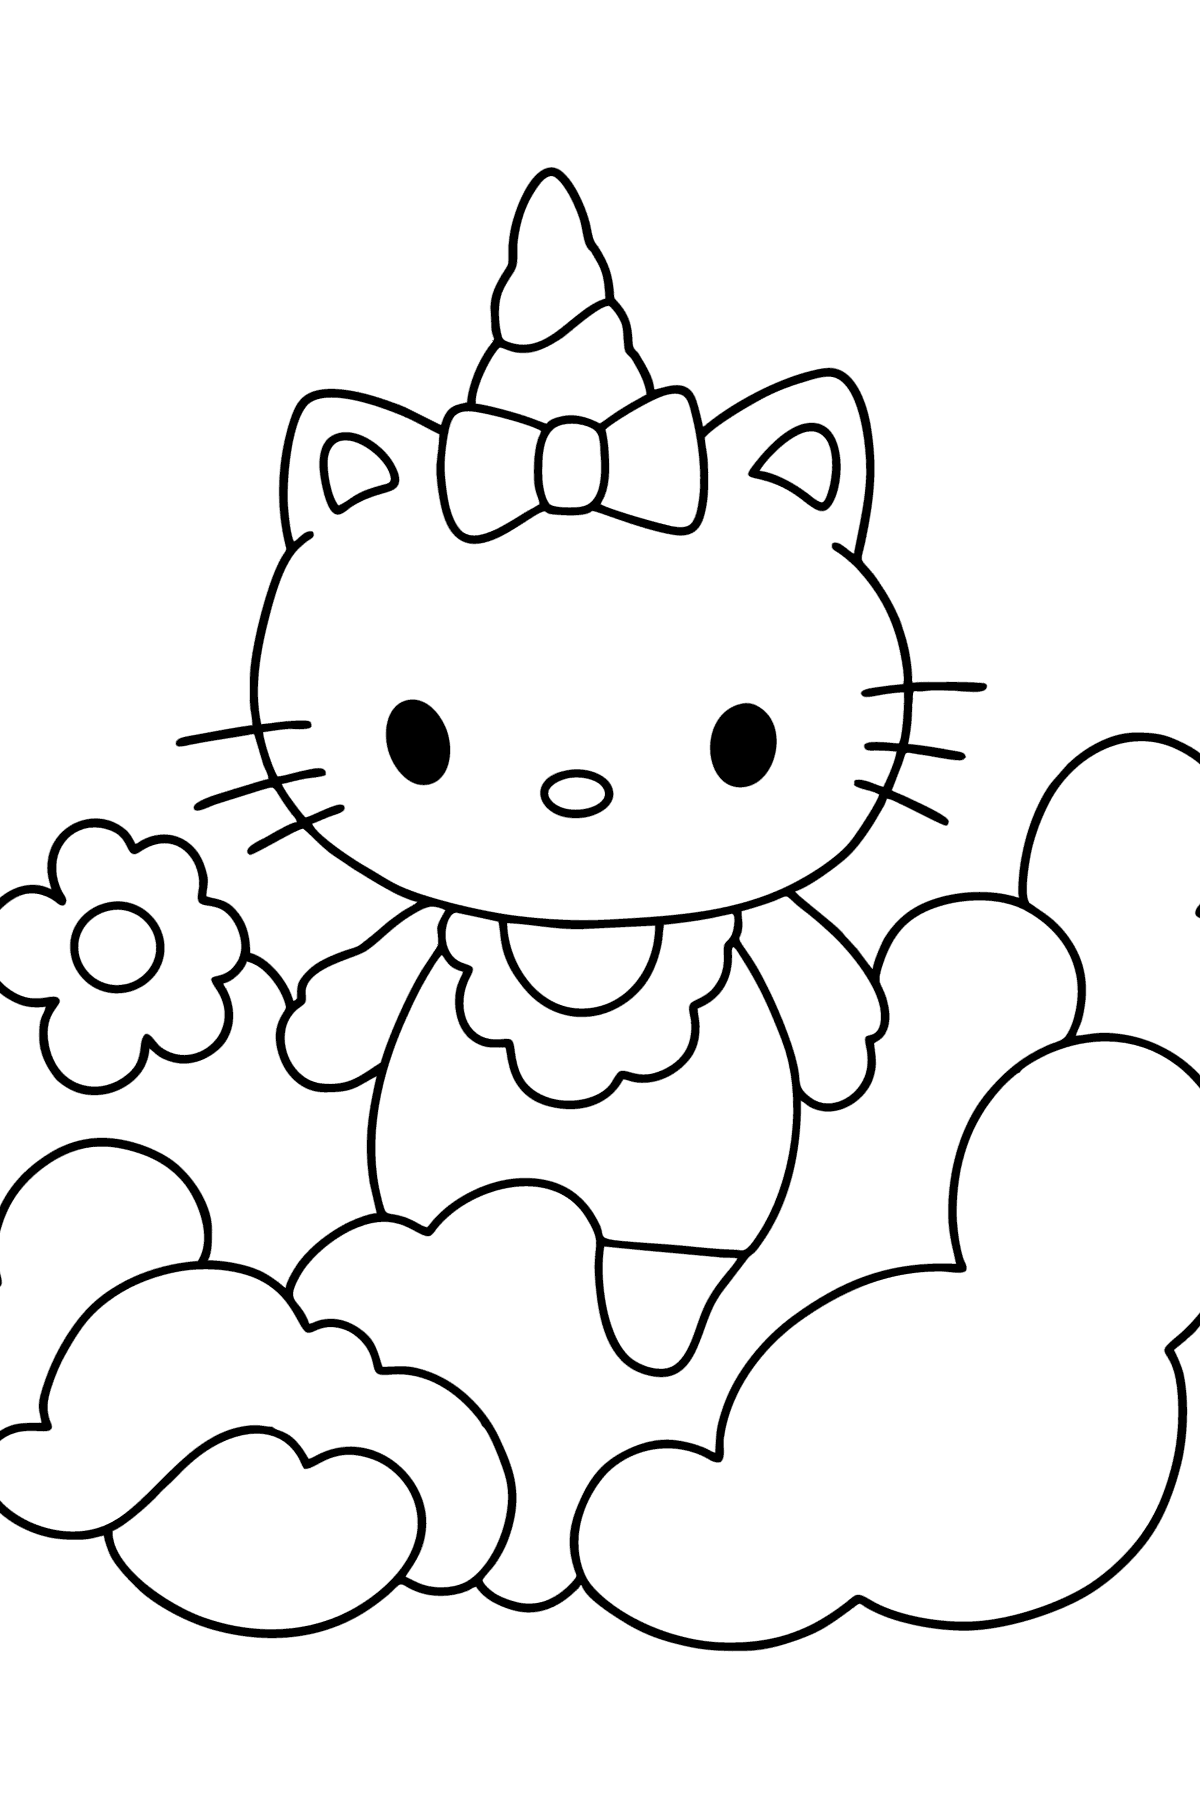 Kolorowanka Hello Kitty jednorożec - Kolorowanki dla dzieci